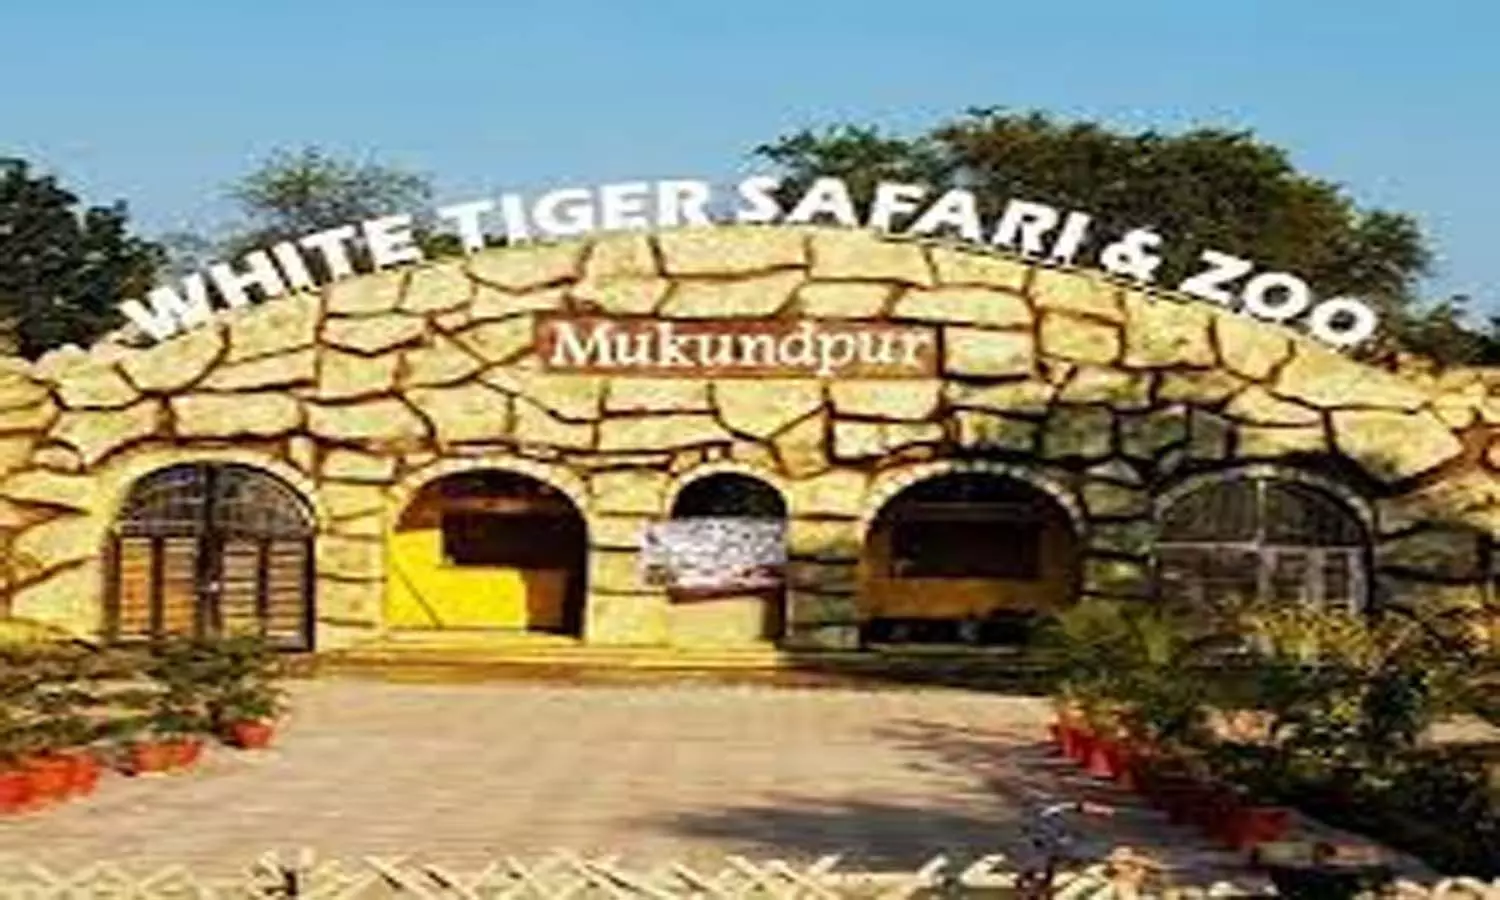 Mukundpur White Tiger Safari: रीवा के मुकुंदपुर व्हाइट टाइगर सफारी में भालू जामवंत की मौत, मचा हड़कम्प